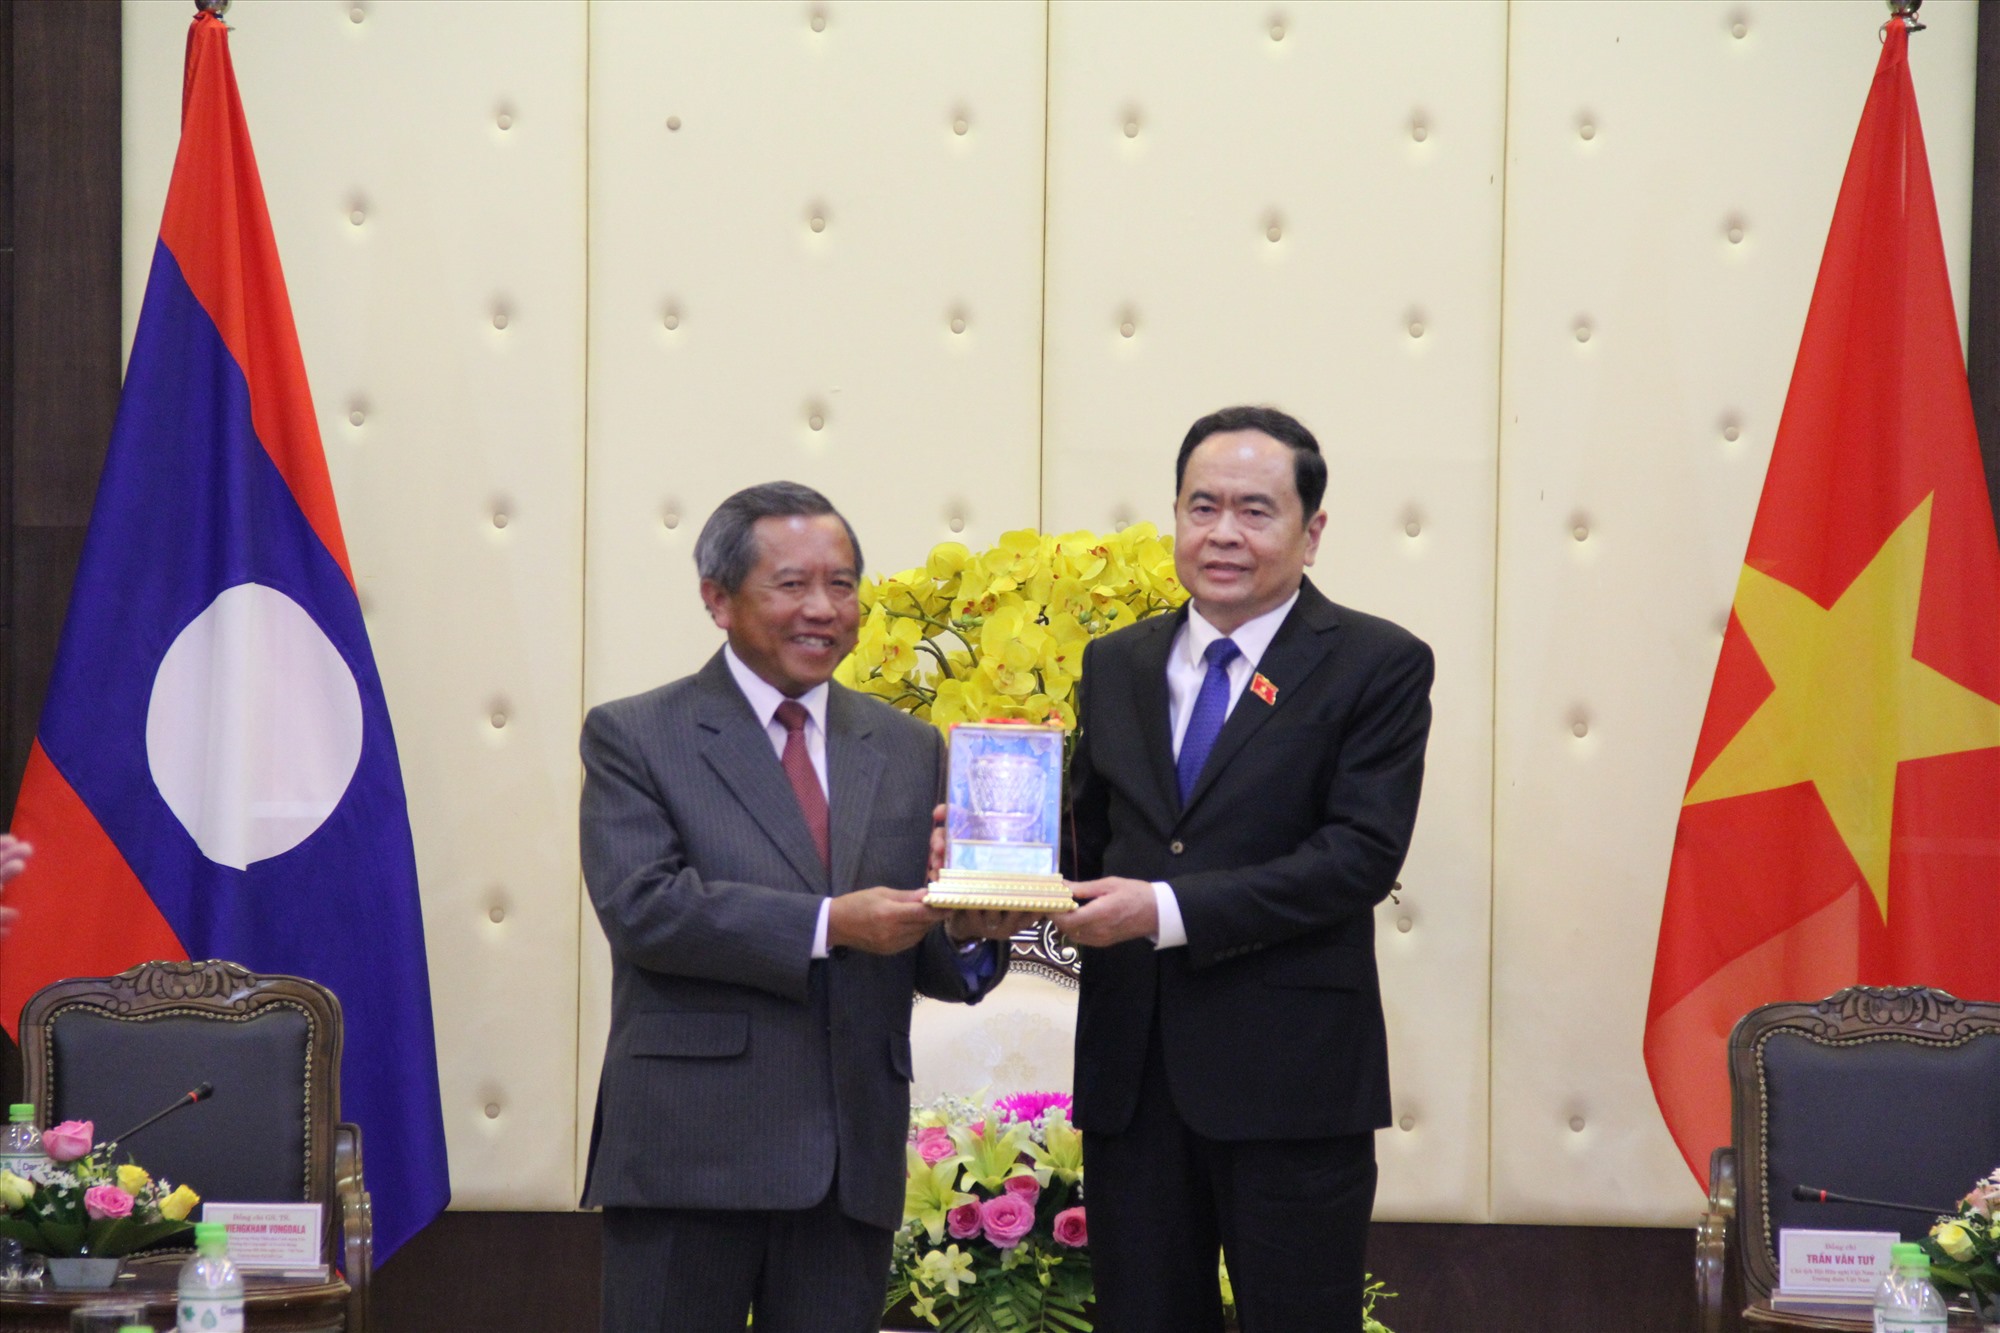 Bộ trưởng Bộ Công nghệ và Truyền thông, Chủ tịch Hội hữu nghị Lào -Việt Nam, Viện sĩ, Tiến sĩ Boviengkham Vongdala trao tặng quà cho Phó Chủ tịch Thường trực Quốc hội Trần Thanh Mẫn - Ảnh: MĐ